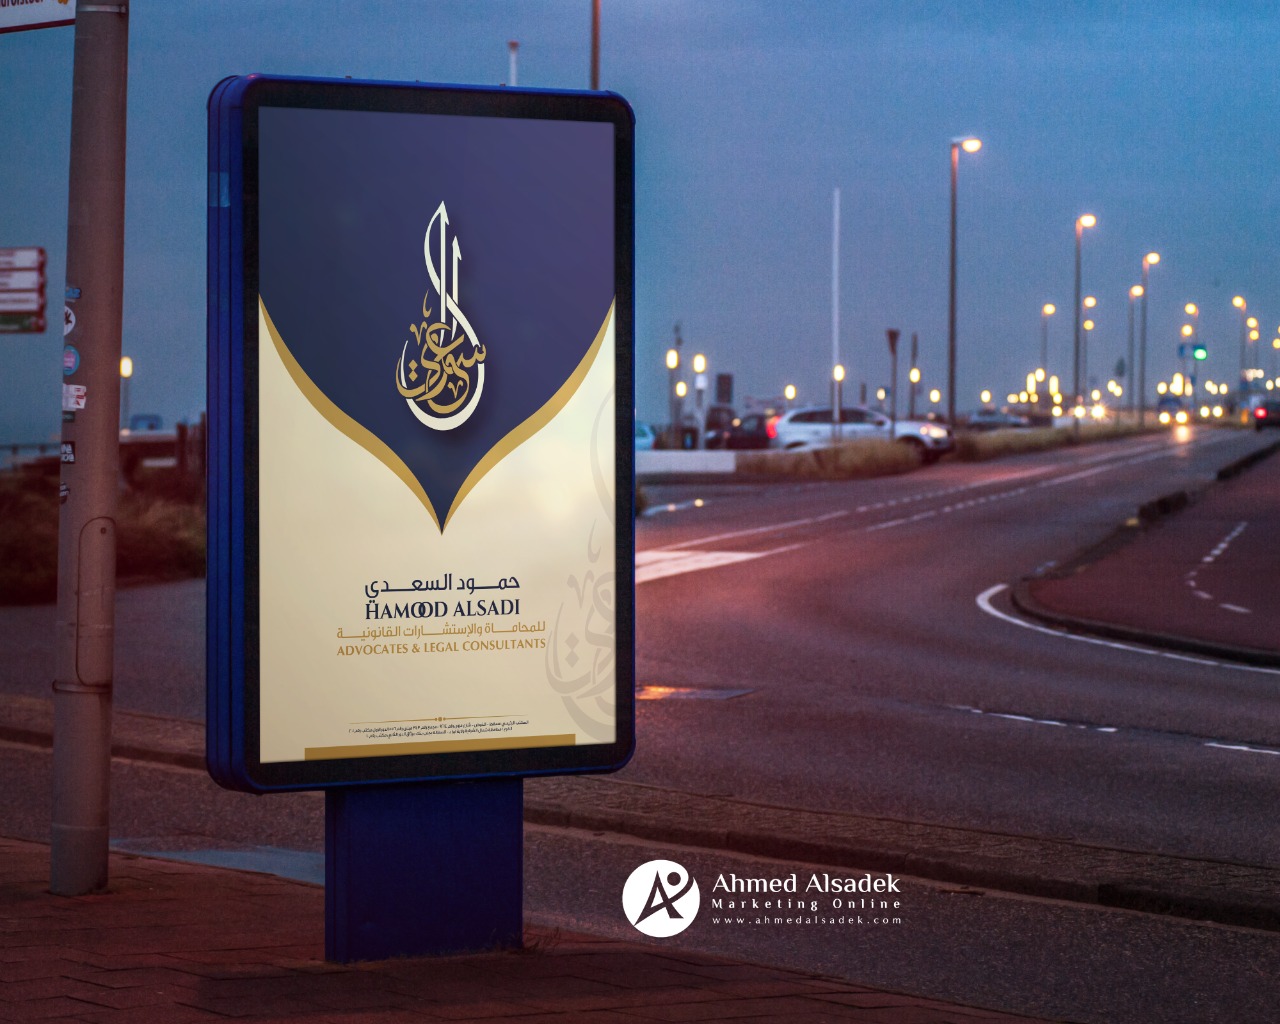 تصميم هوية حمود السعدي للمحاماة في سلطنة عمان 21